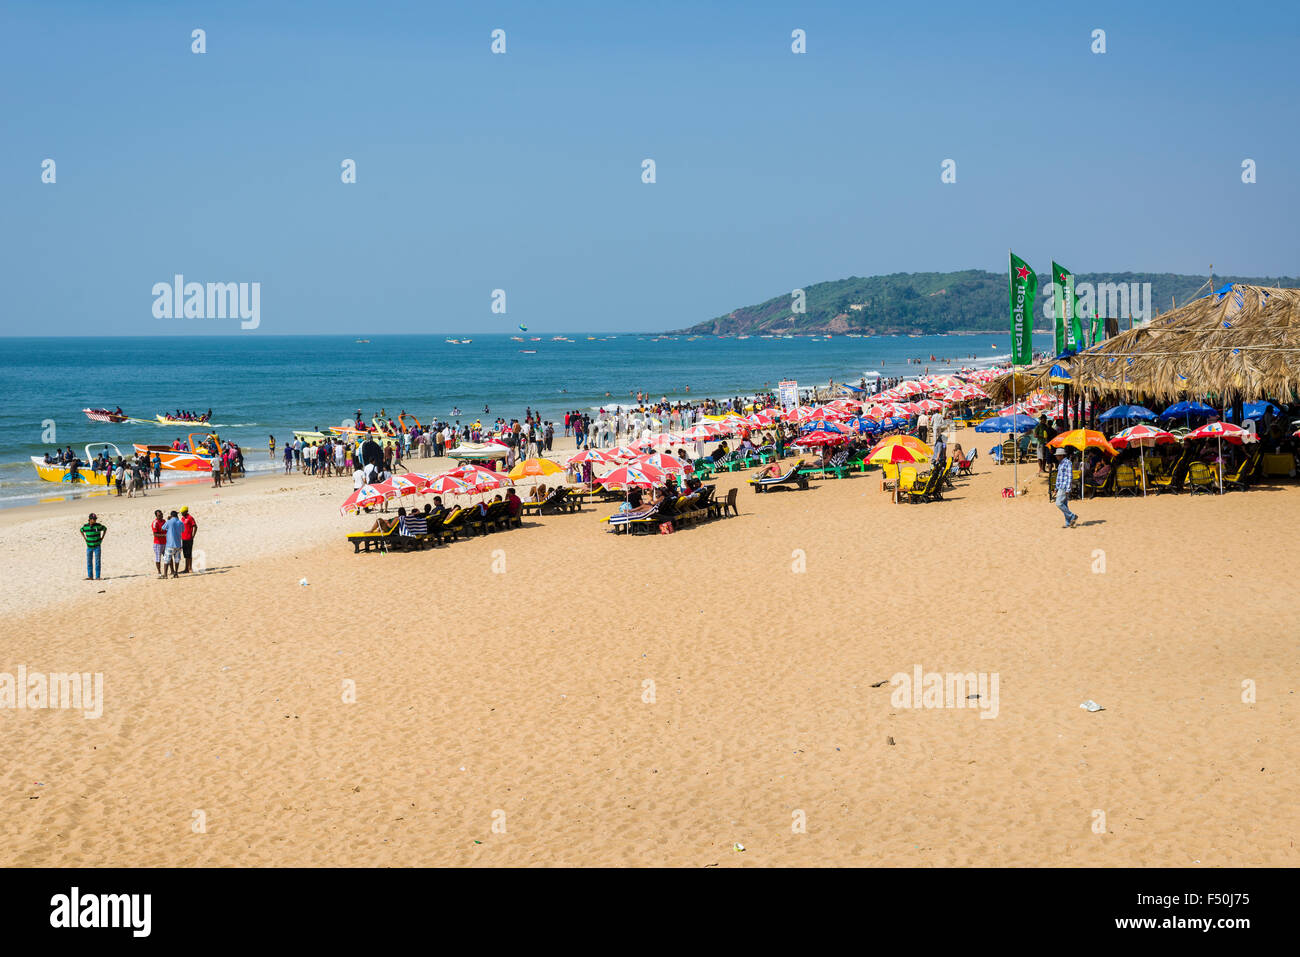 Spiaggia di Calangute con ombrelloni, cielo azzurro, sabbia bianca e mare blu è una delle famose spiagge del portoghese ex colo Foto Stock